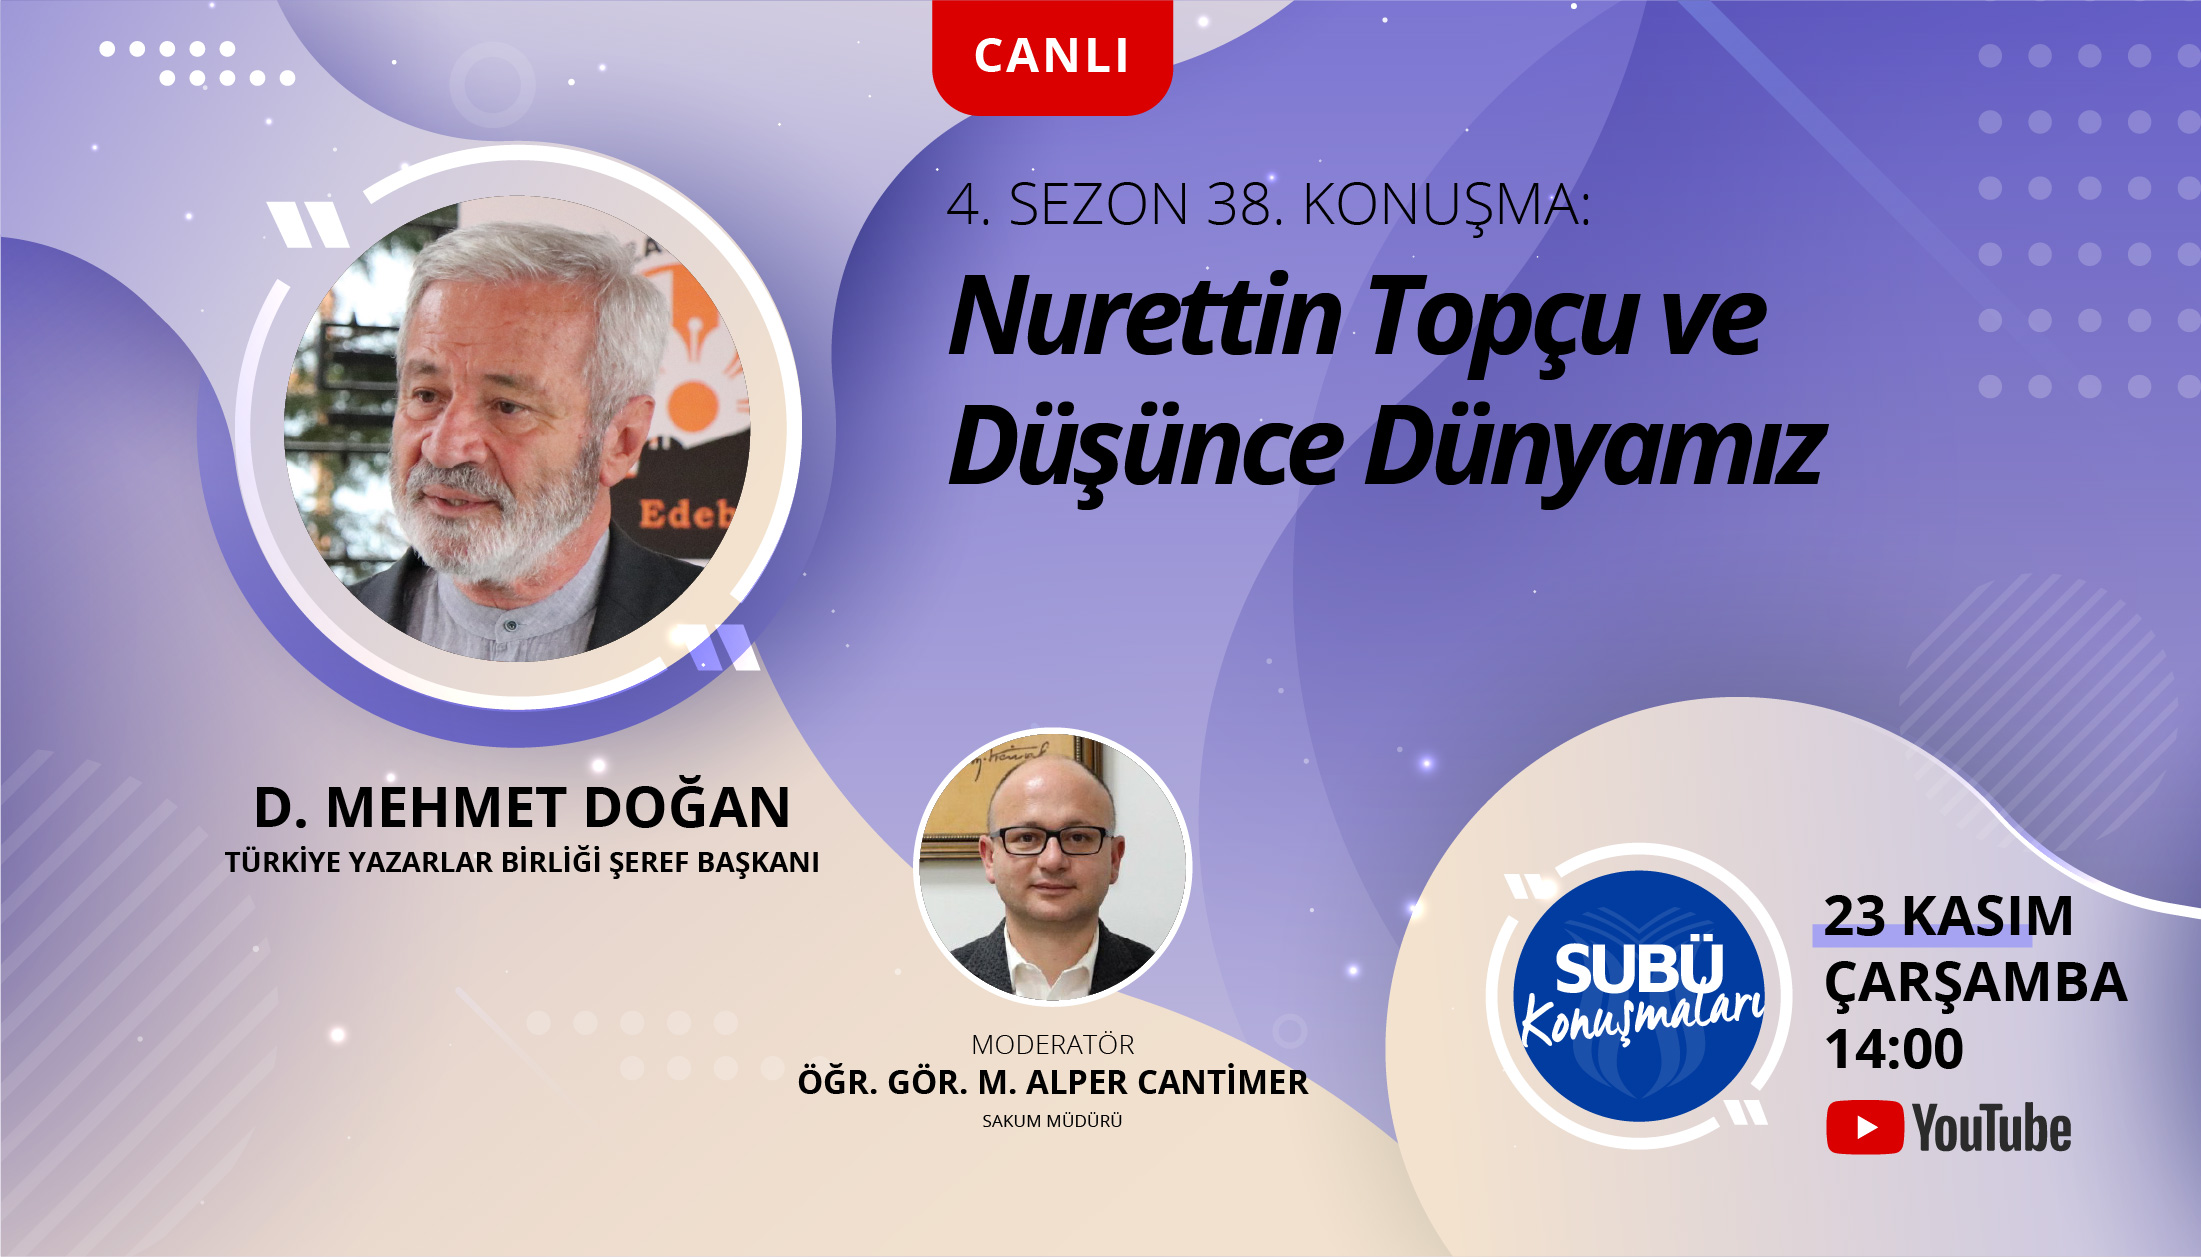 D. Mehmet Doğan Nurettin Topçu’yu anlatacak